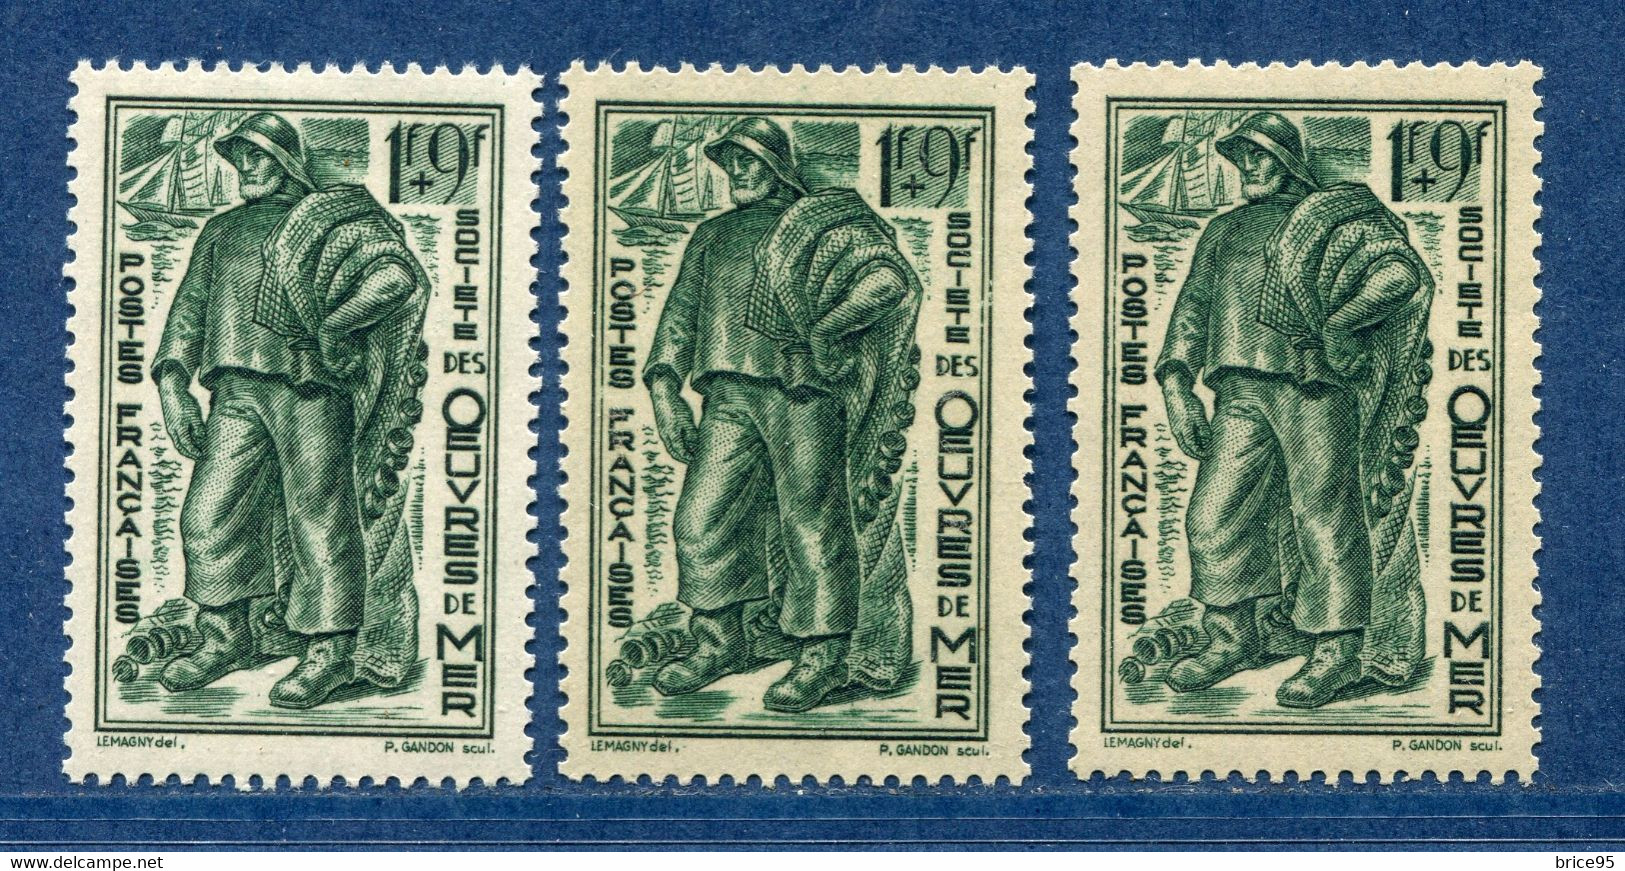 ⭐ France - Variété - YT N° 504 - Couleurs - Pétouille - Neuf Sans Charnière - 1941 ⭐ - Unused Stamps